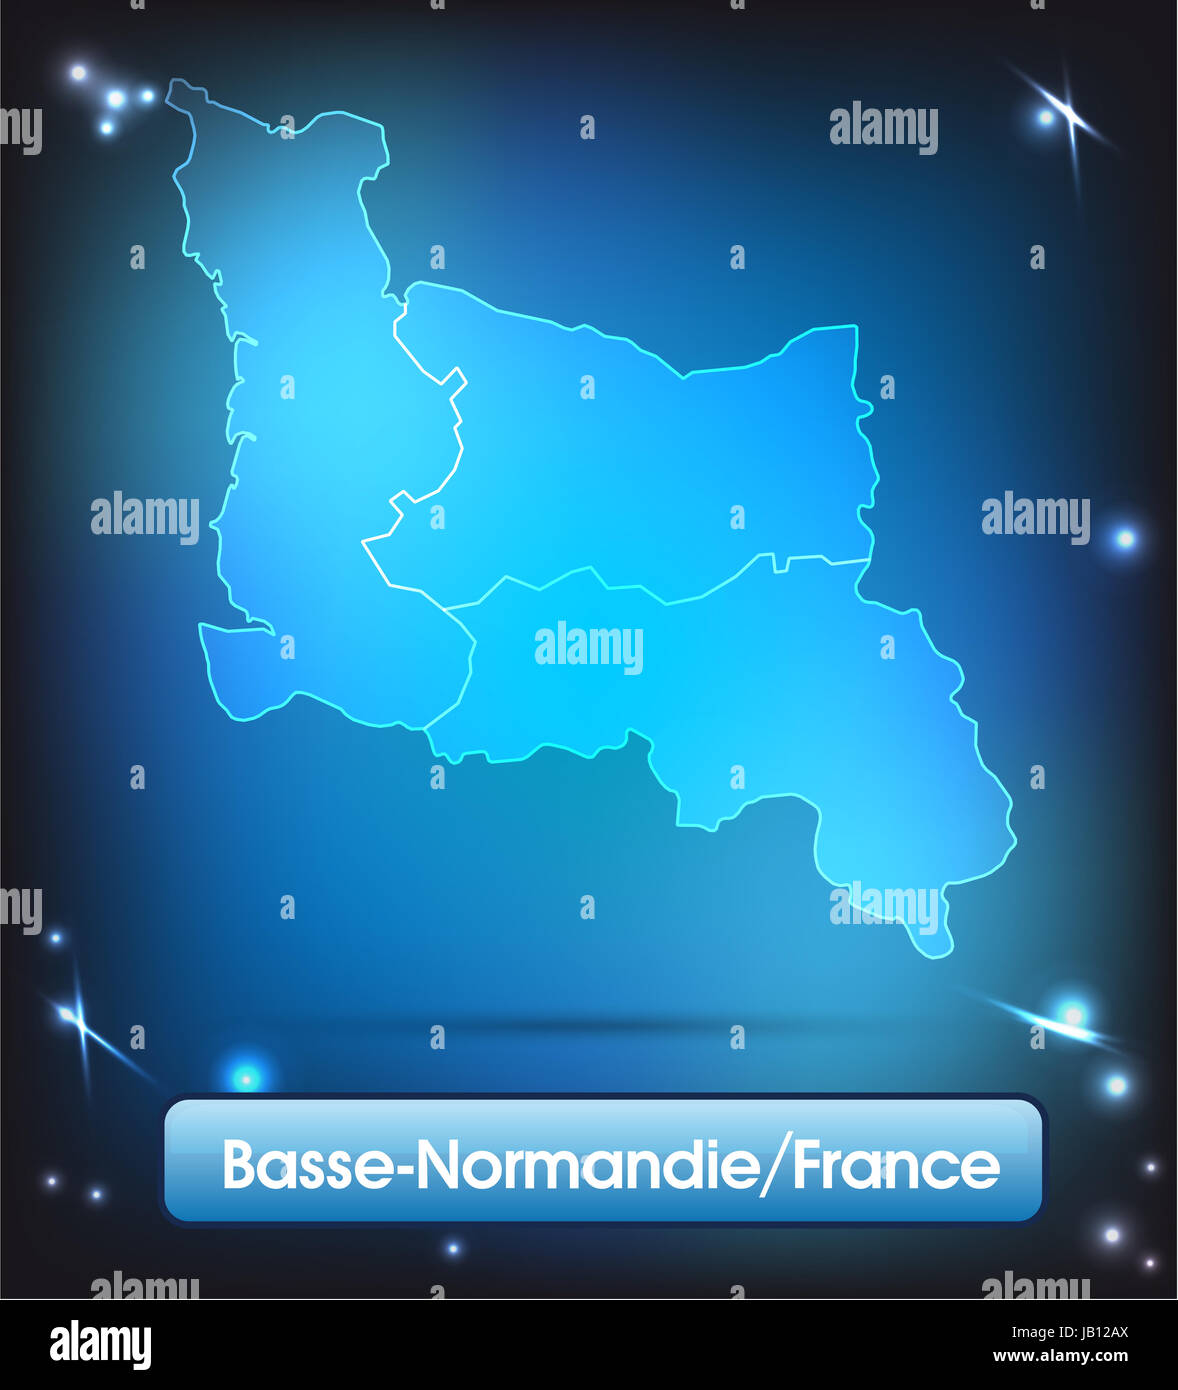 Dans Grenzkarte Basse-Normandie Frankreich als Grenzen und als lumineux Karte. Durch die Gestaltung ansprechende fügt sich die Karte perfekt dans Ihr Vorhaben ein. Banque D'Images